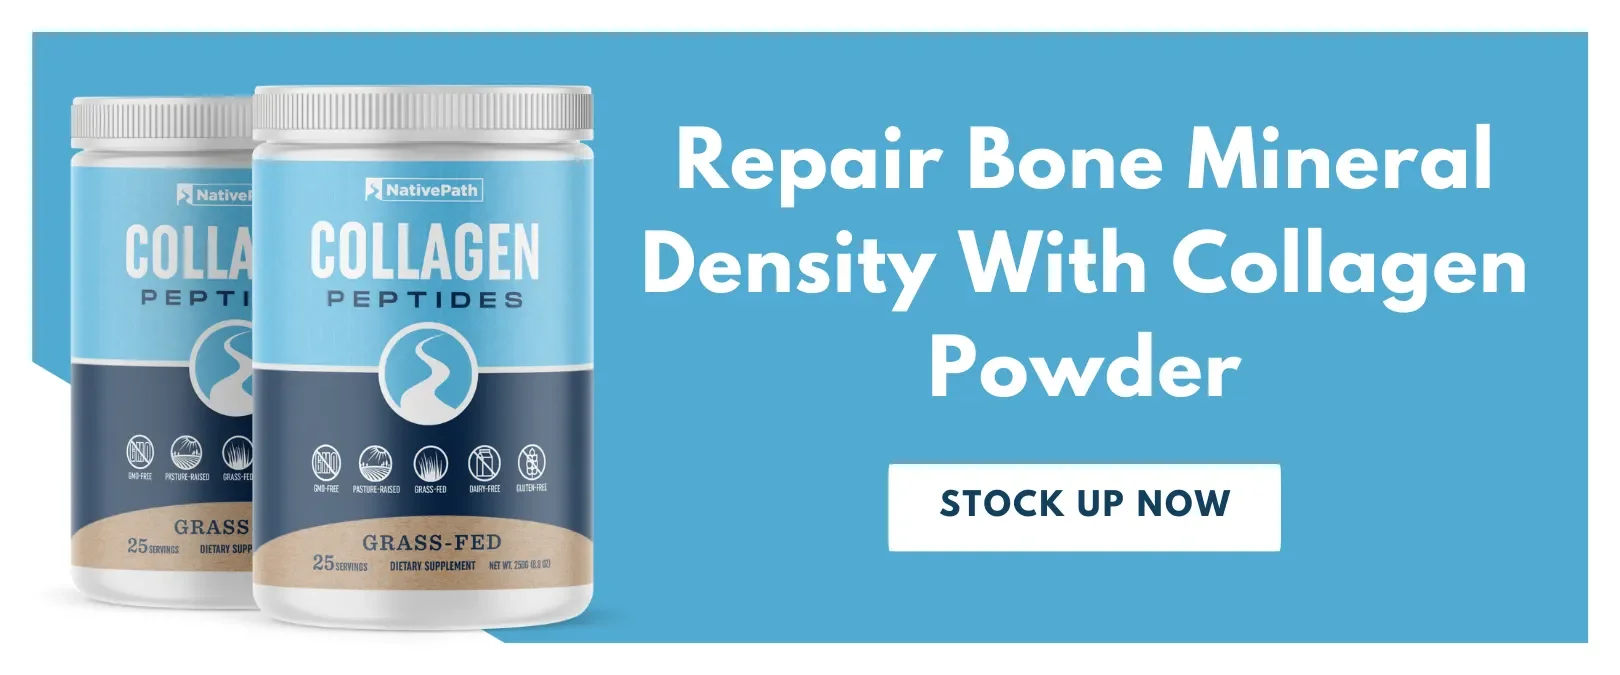 Repair Bone Mineral Density With Collagen Powder